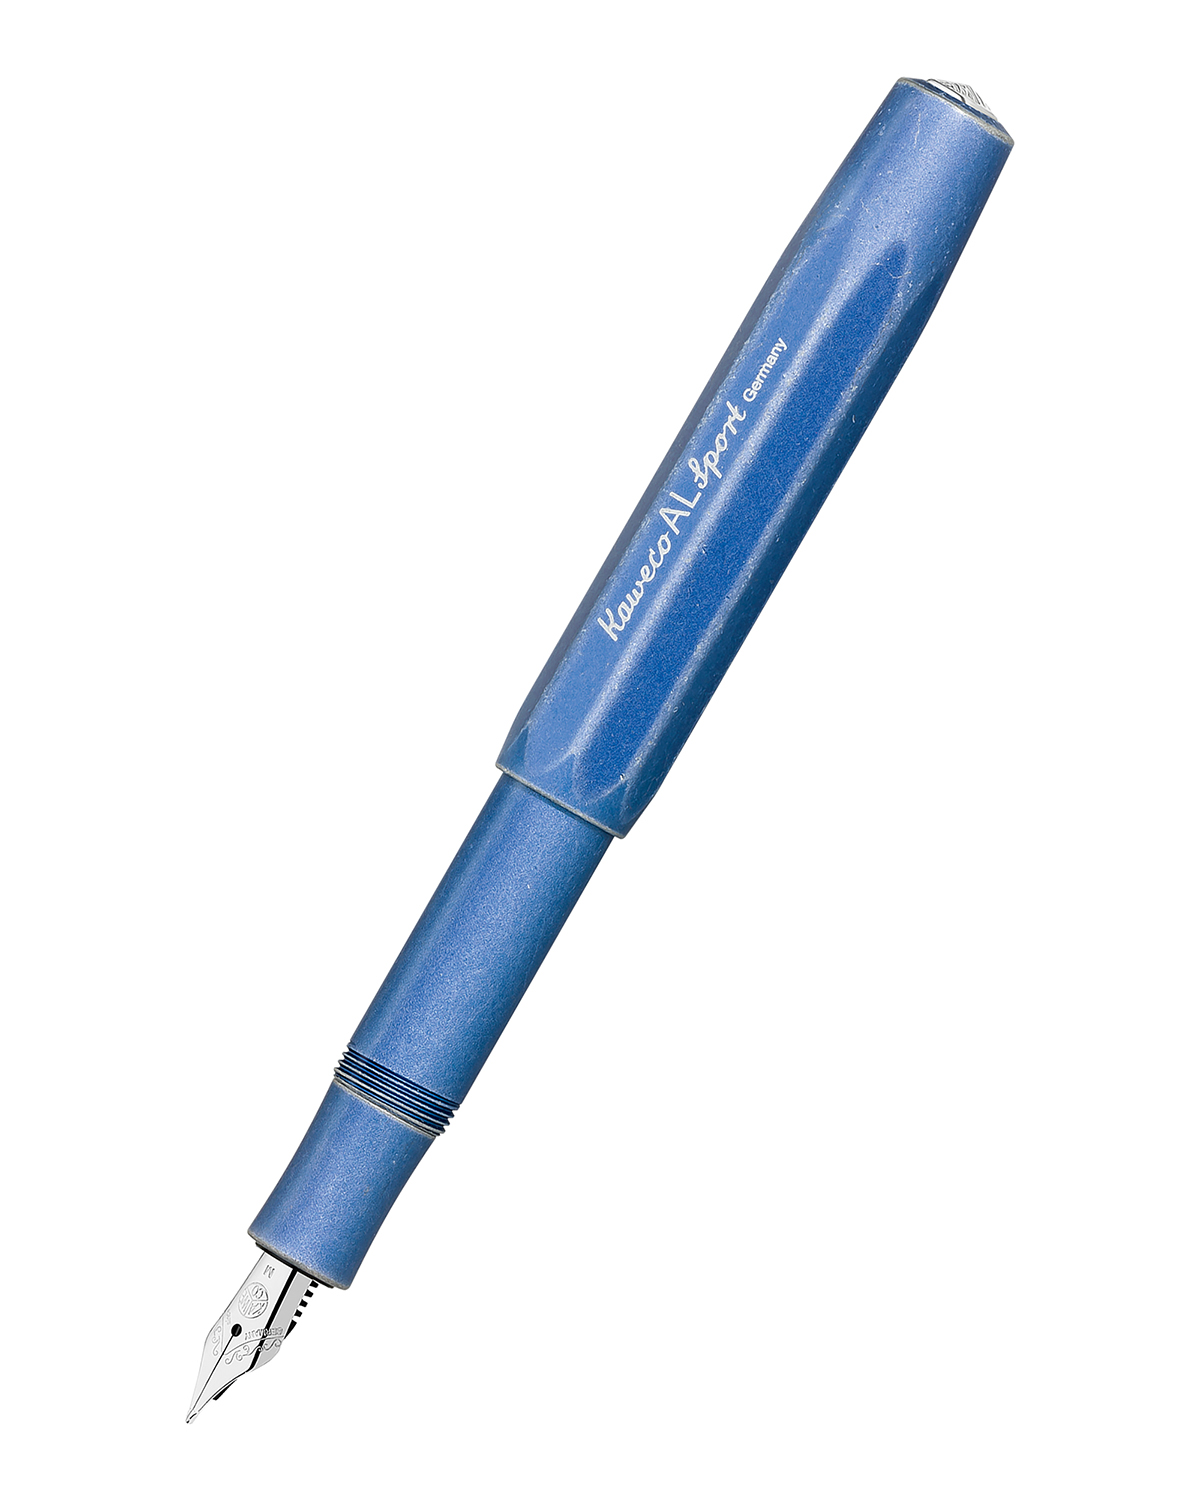 Перьевая ручка Kaweco AL Sport Stonewashed EF 05 мм чернила синие корпус синий